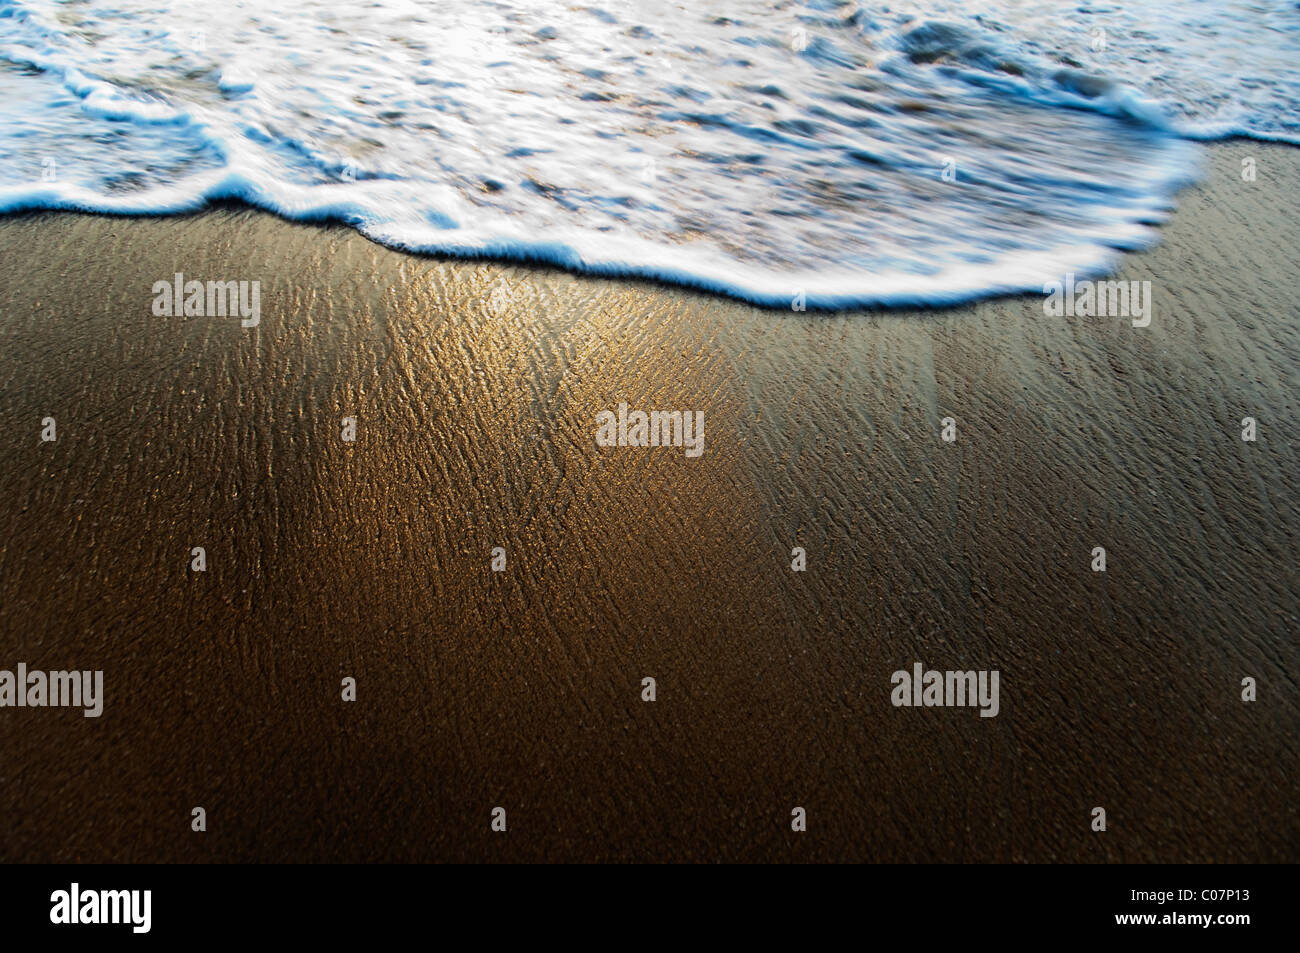 Un alto ángulo de visualización de surf en la playa, Goa, India Foto de stock